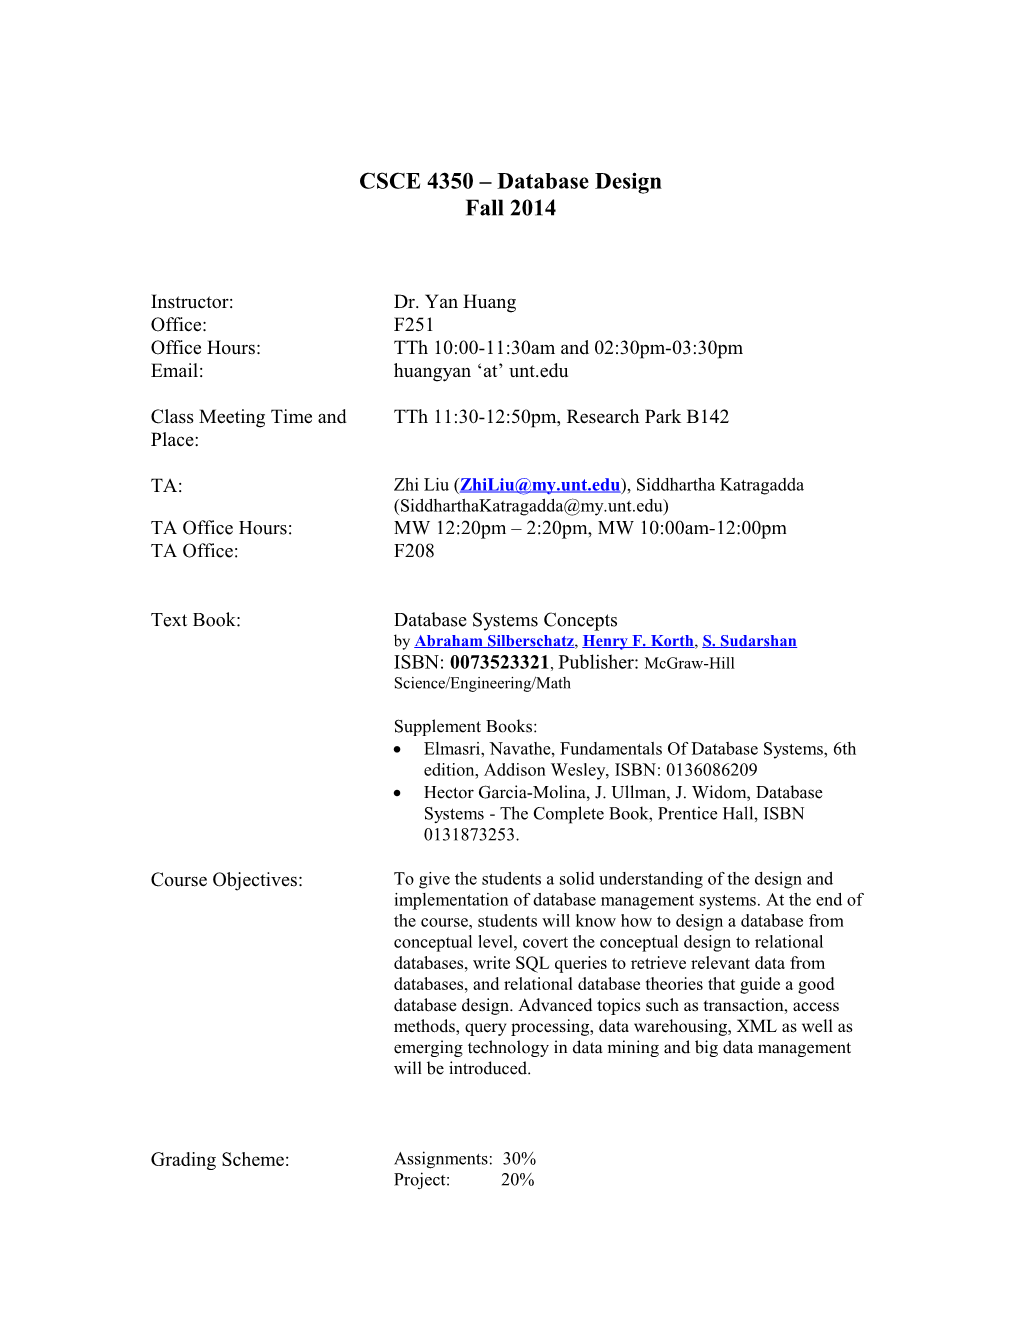 CSCE 4350 Database Design